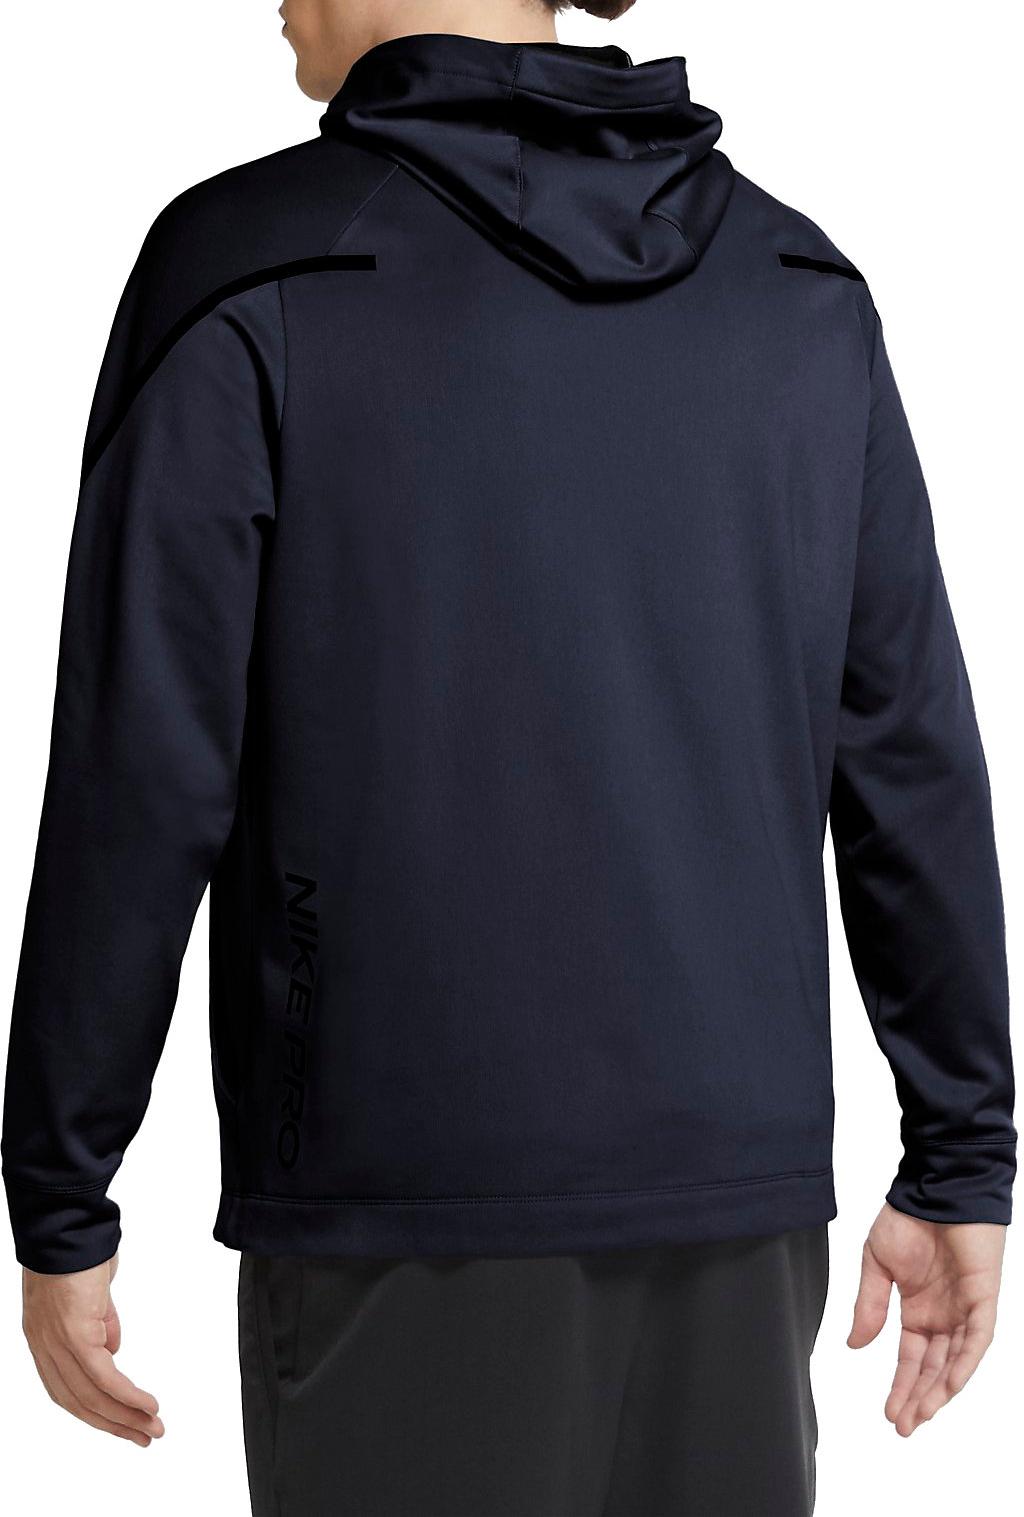 Hooded sweatshirt Nike Pro HD PO FLC 2 